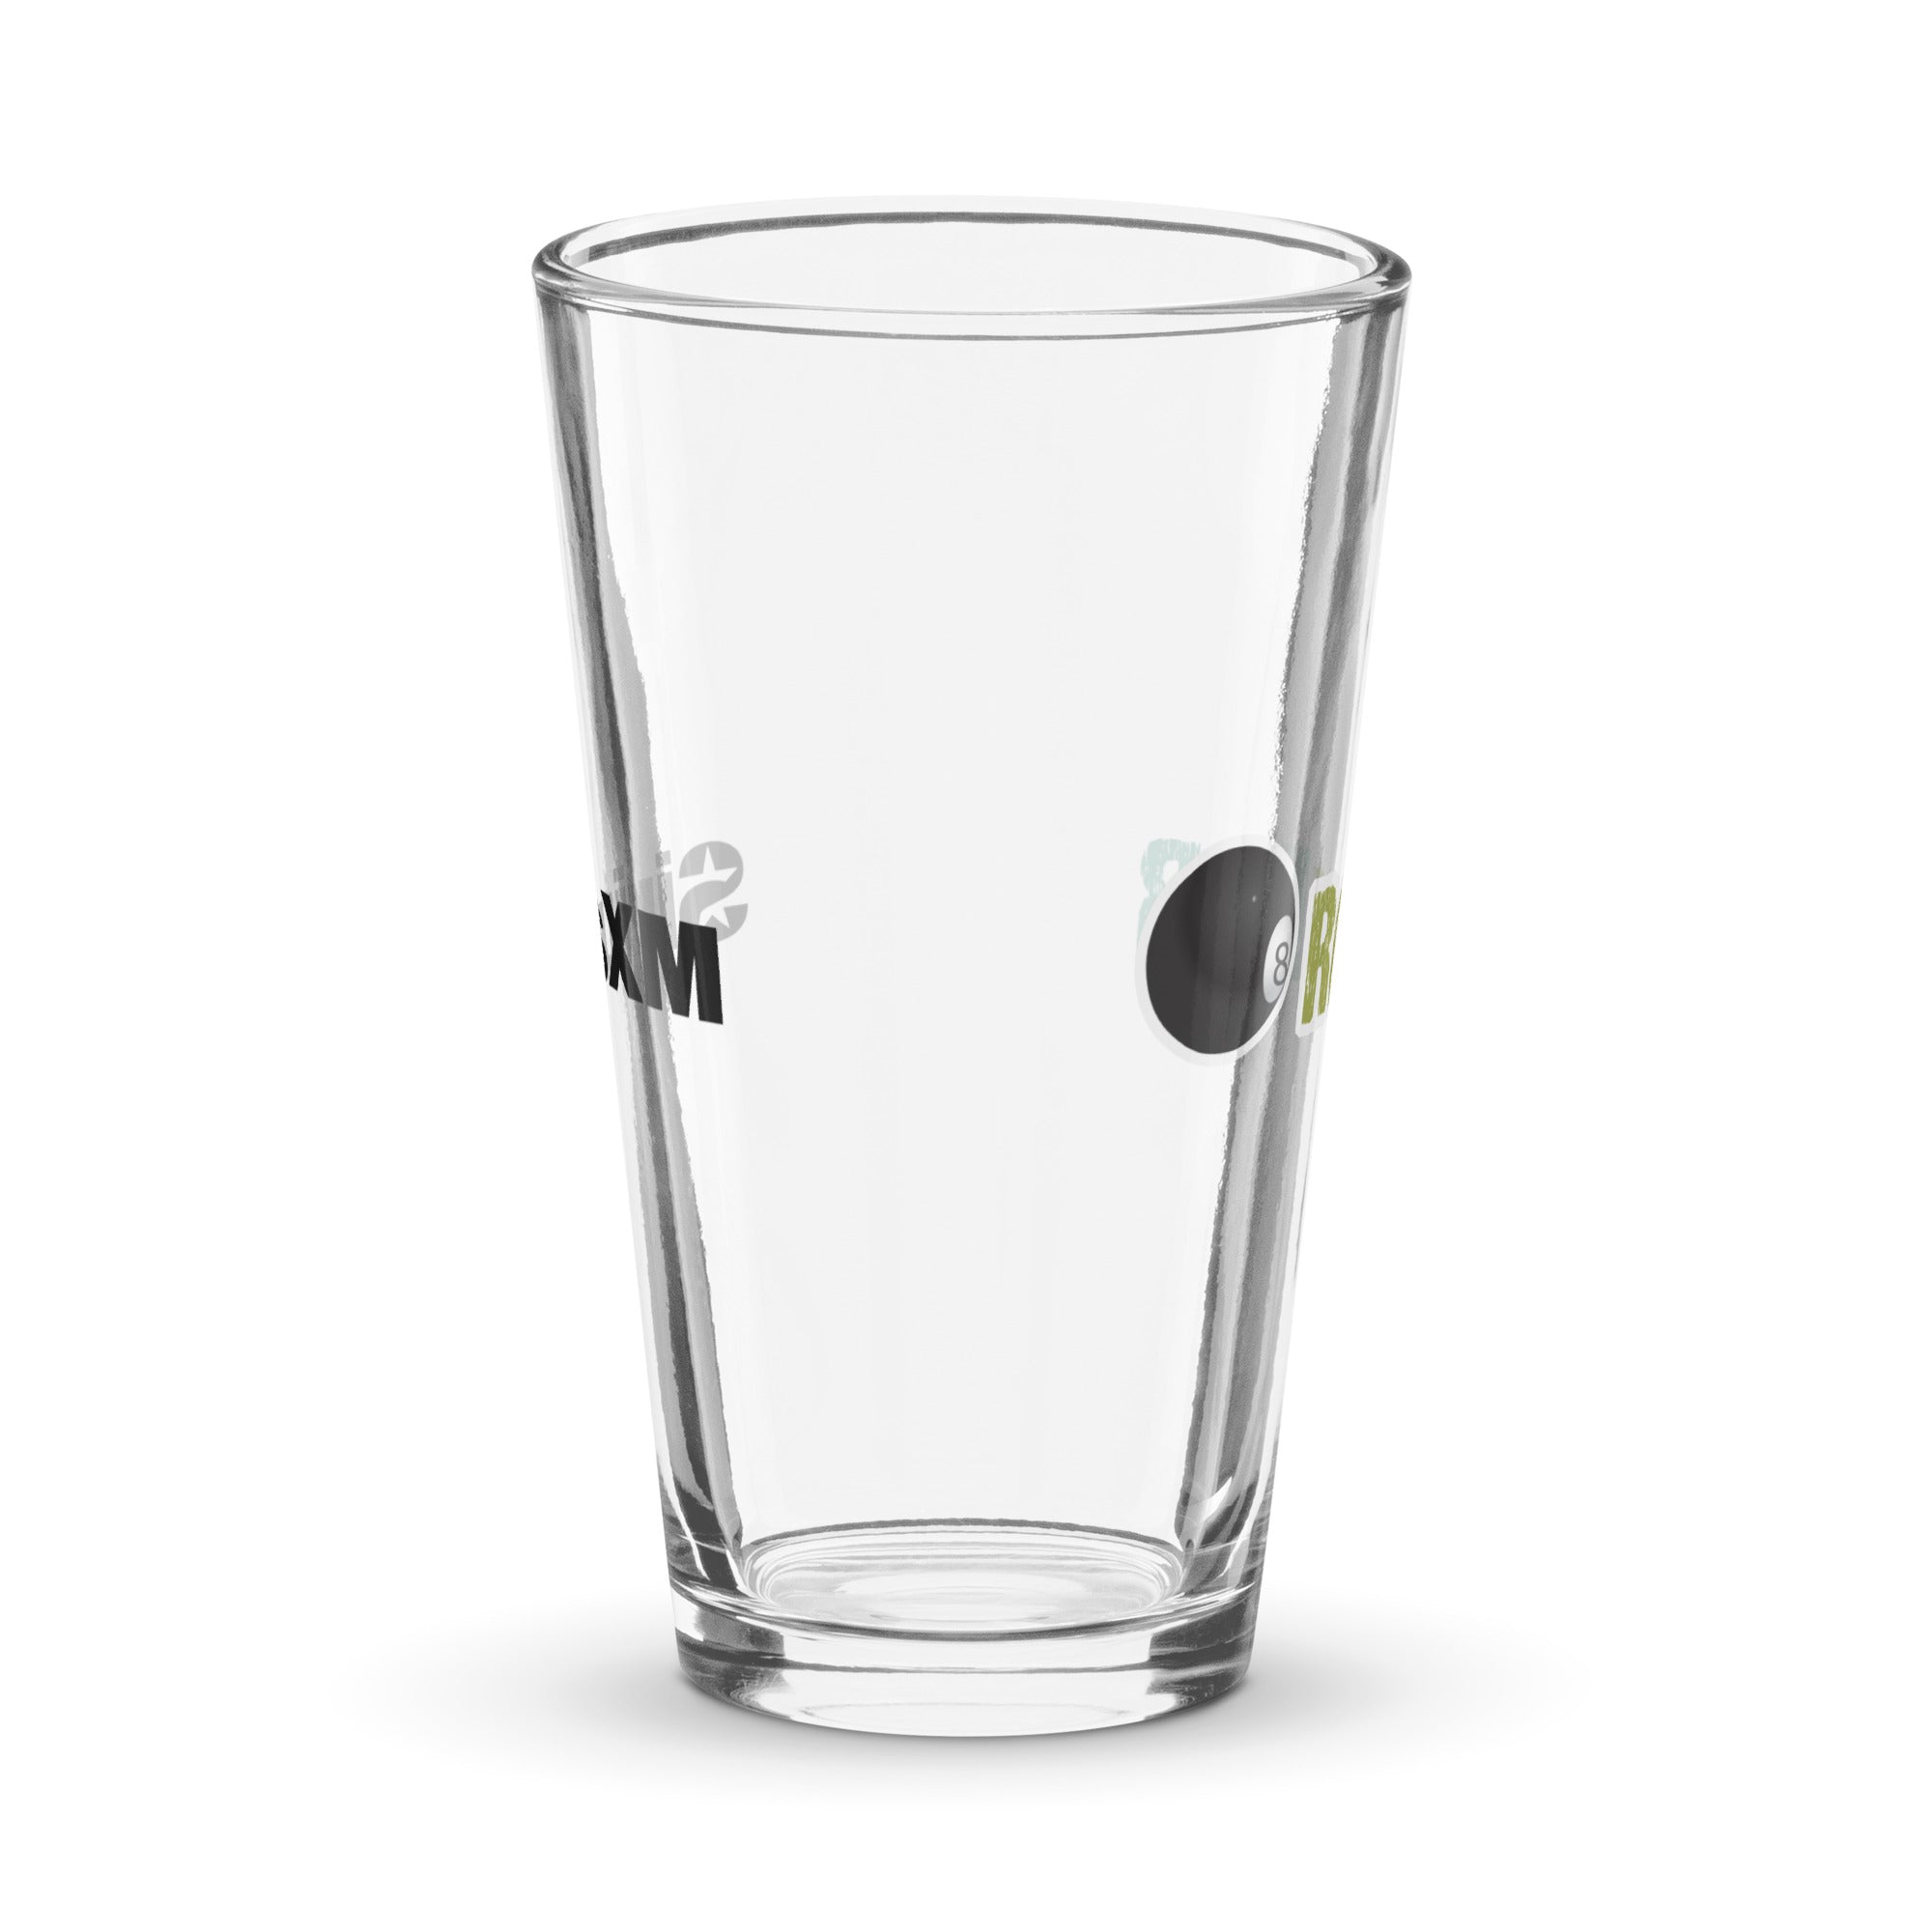 RockBar: Pint Glass